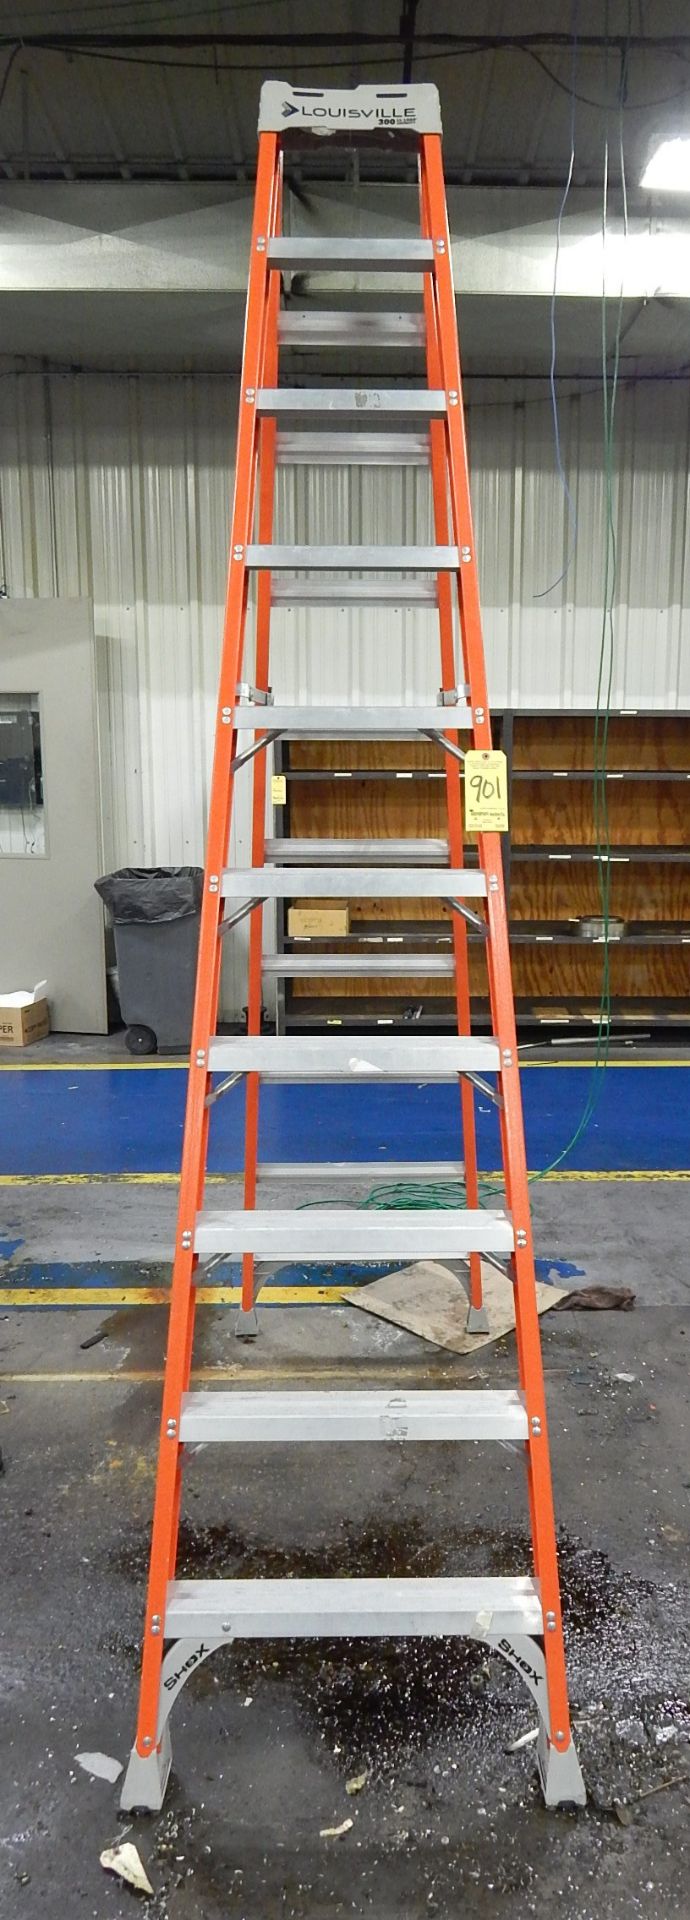 Louisville 10 Ft. Fiberglass Step Ladder